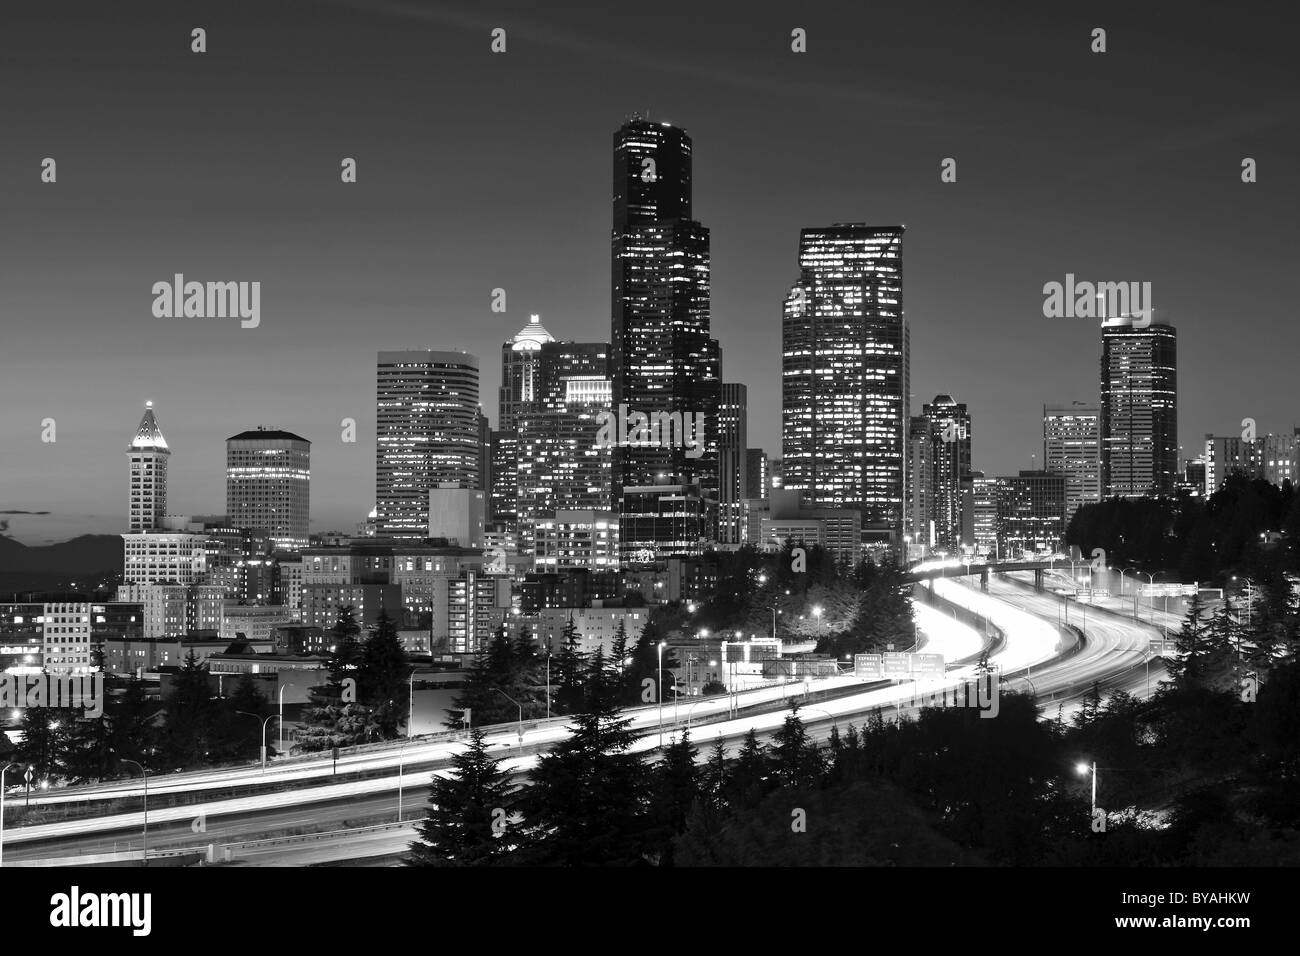 Bianco e nero, night shot, città autostrada Interstate 5 nella parte anteriore dello skyline del quartiere finanziario con centro di Columbia Foto Stock